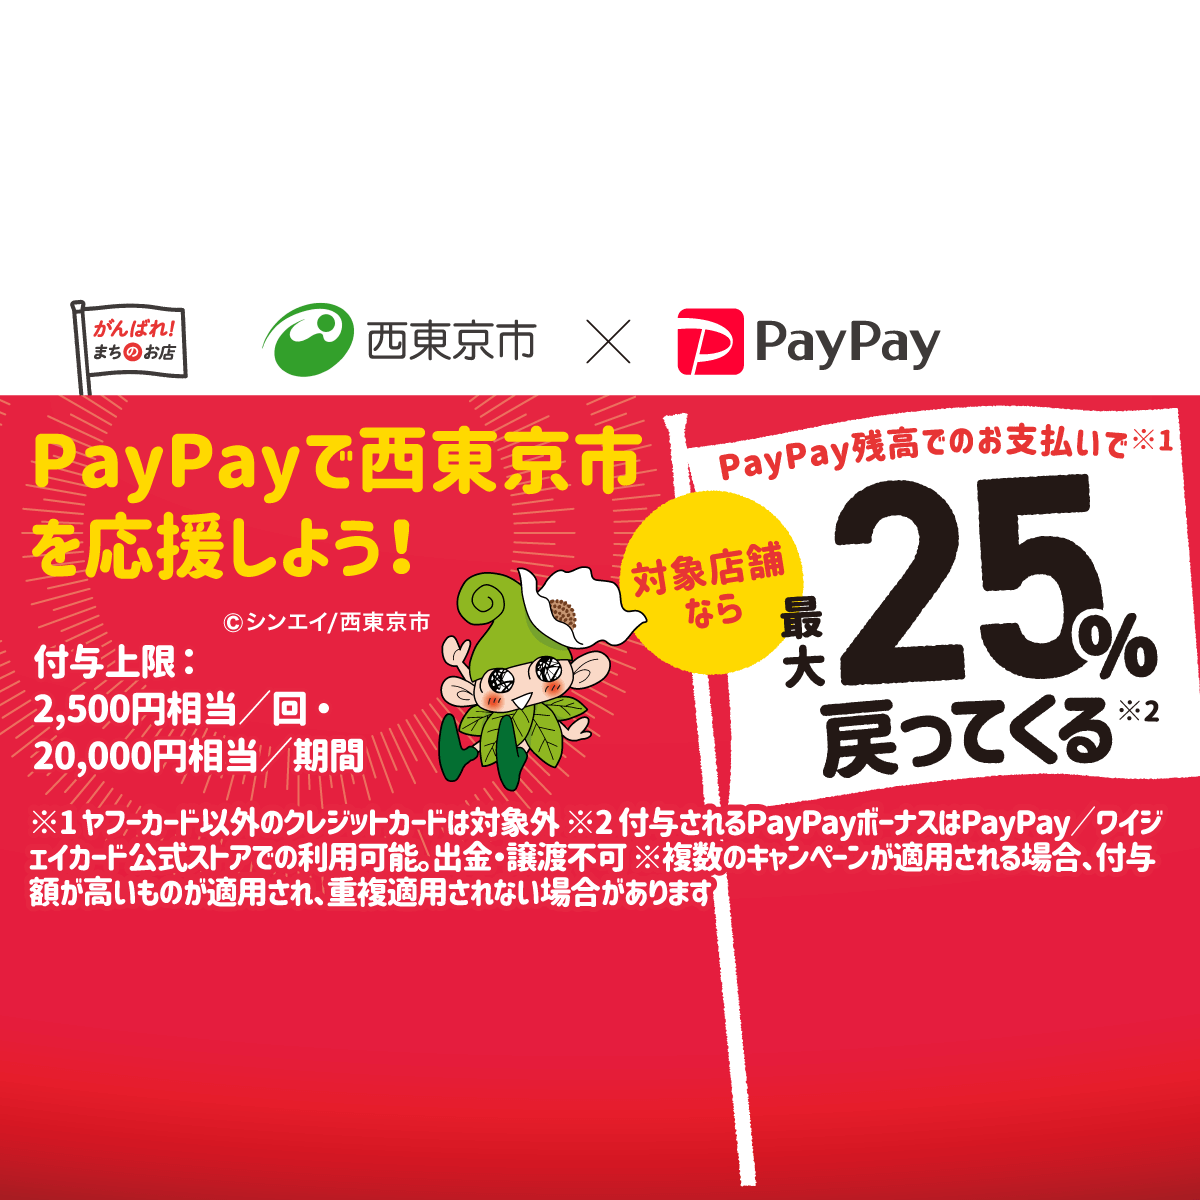 西東京市でキャッシュレス 最大25 戻ってくるキャンペーン キャッシュレス決済のpaypay